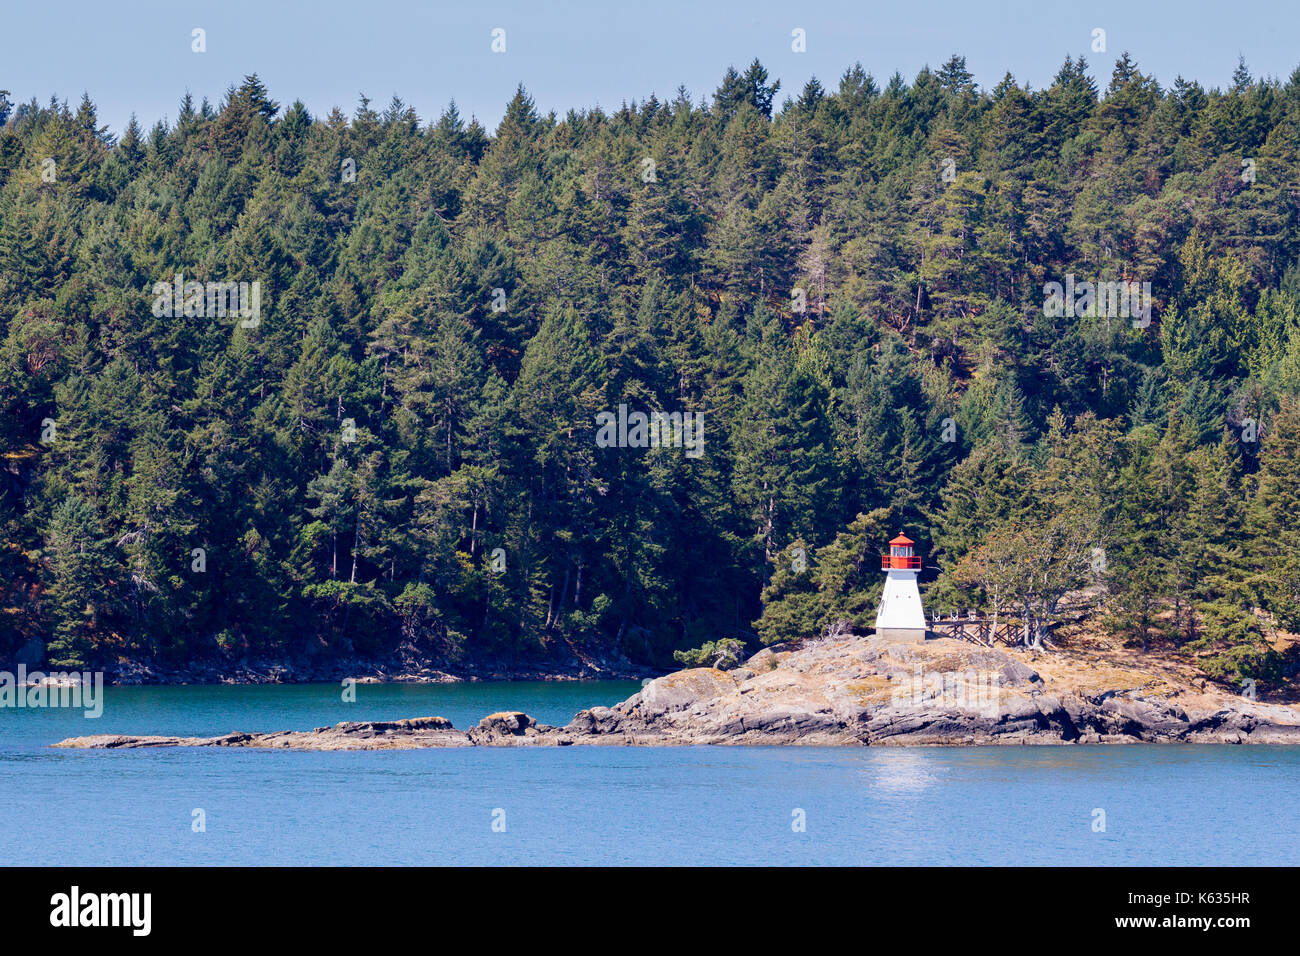 Piccolo faro sulle isole del golfo all'isola di Vancouver, British Columbia, Canada. Foto Stock